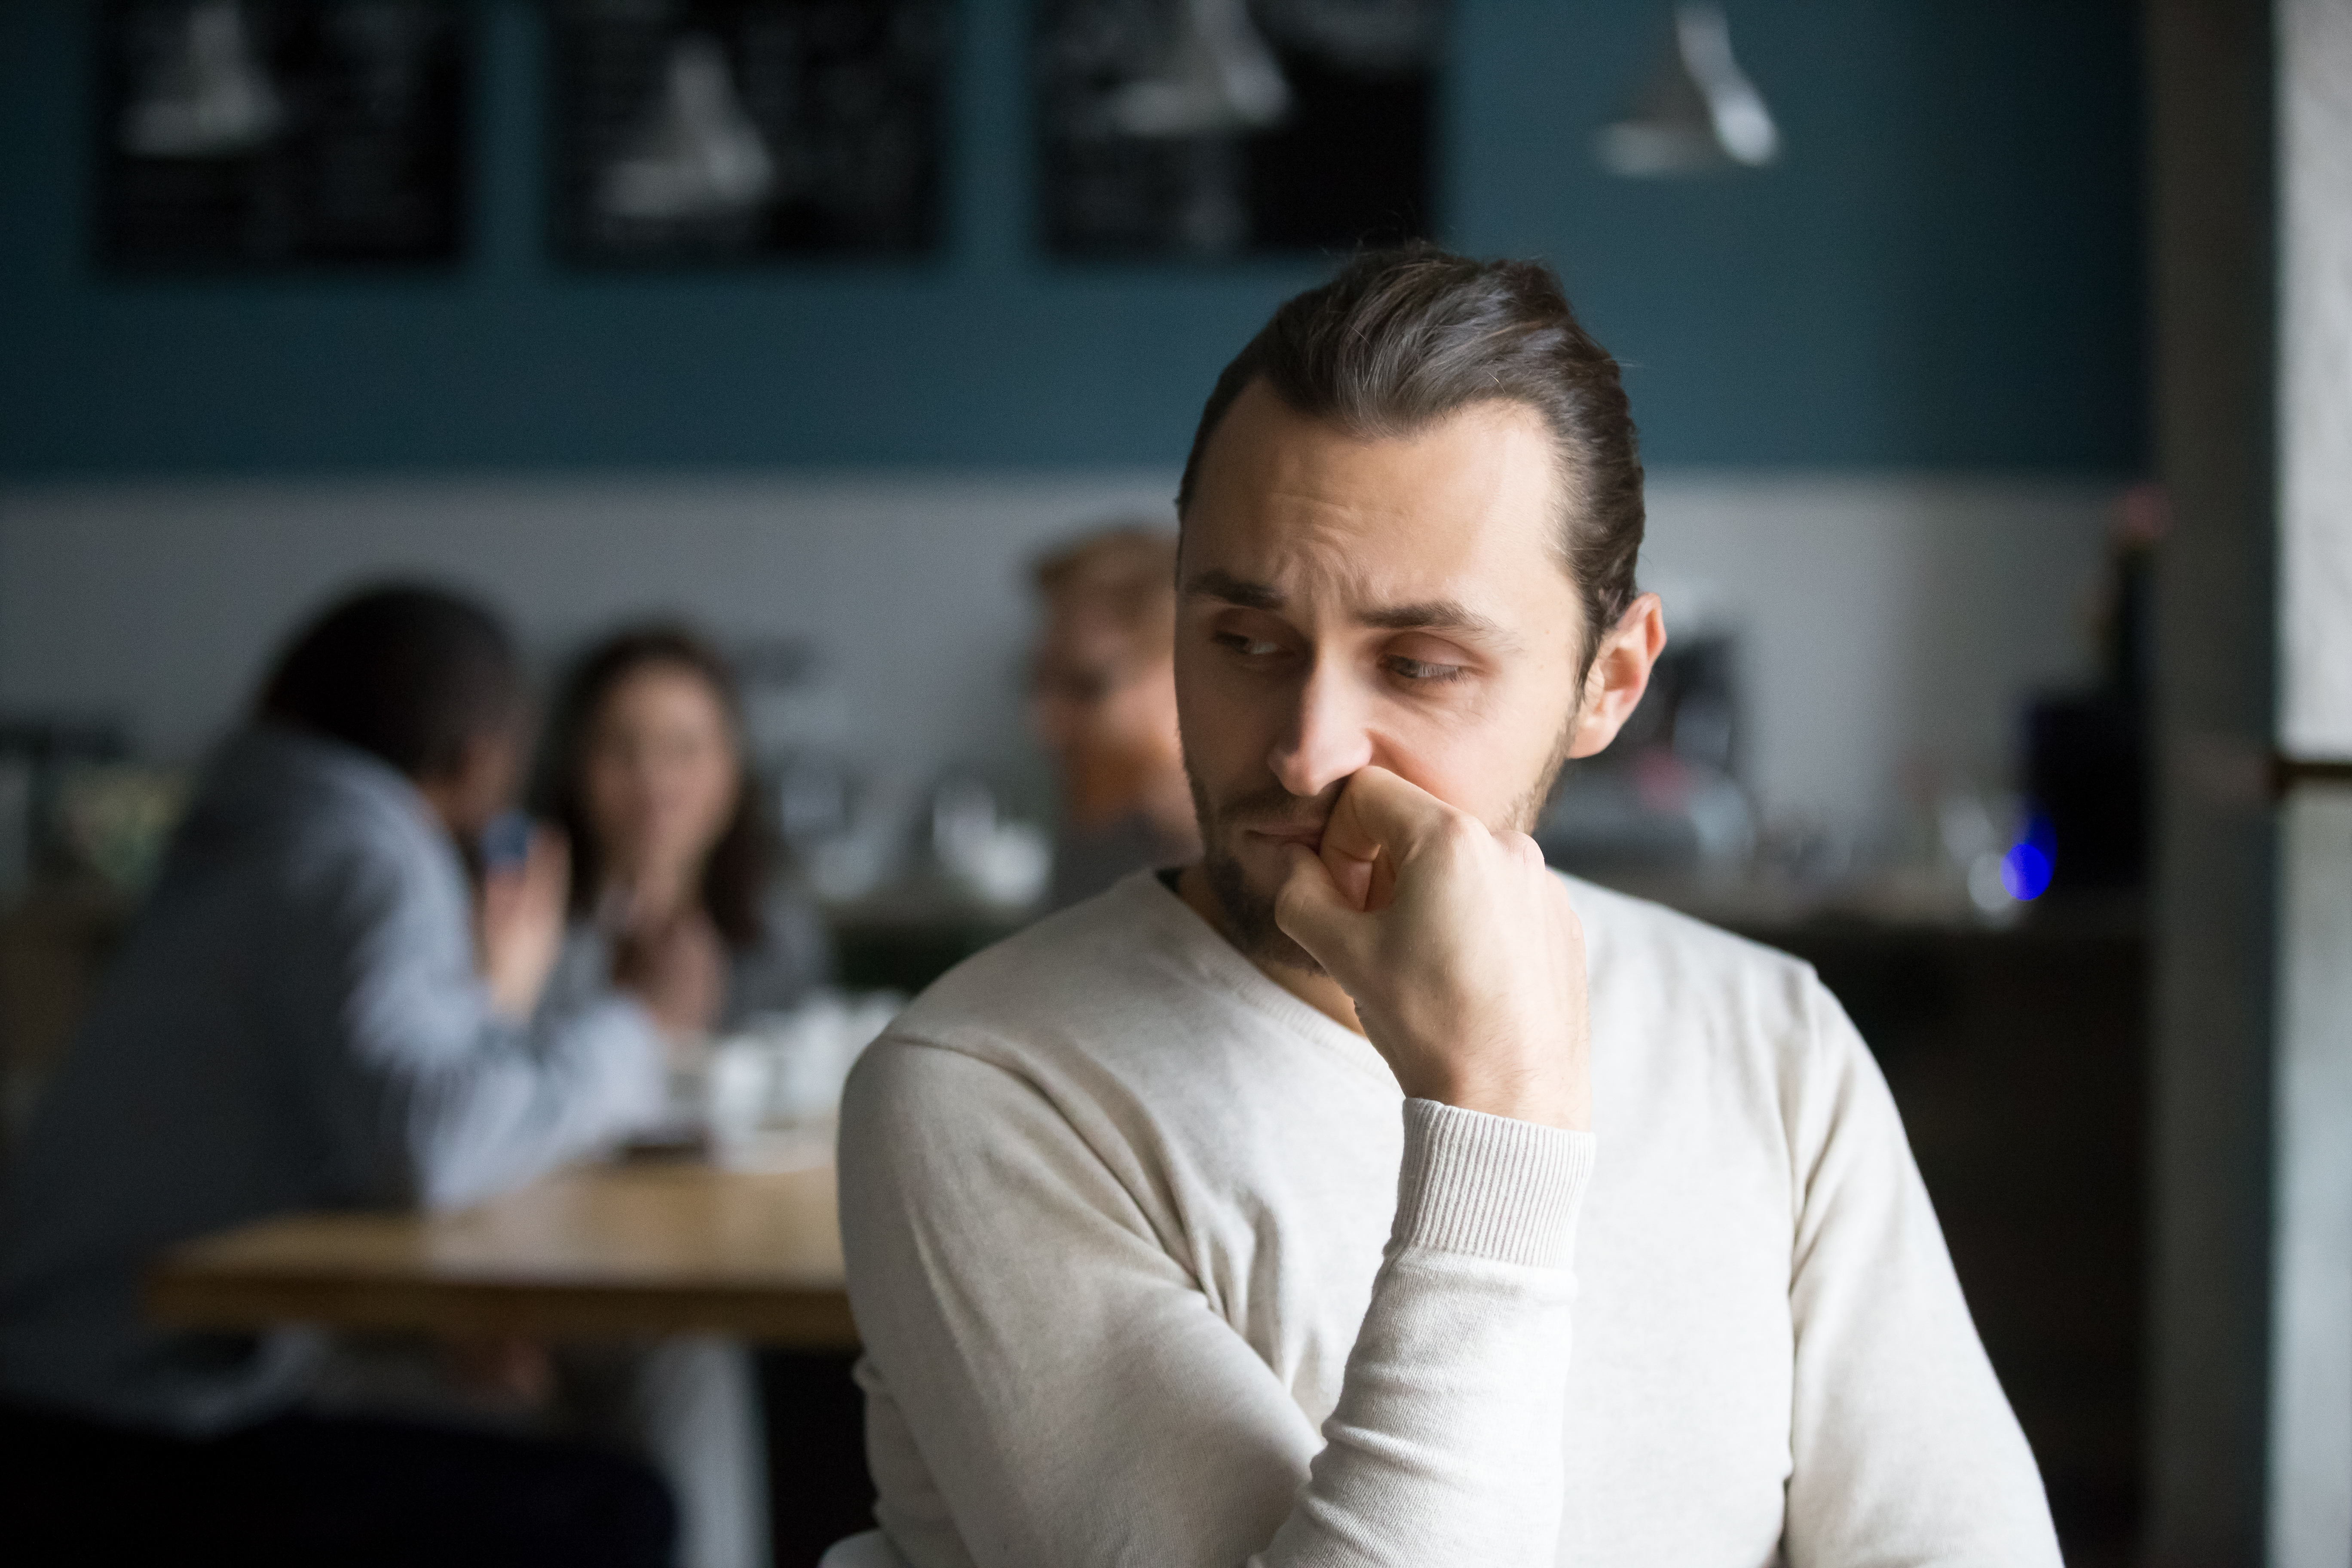 An upset man in a restaurant | Source: Shutterstock